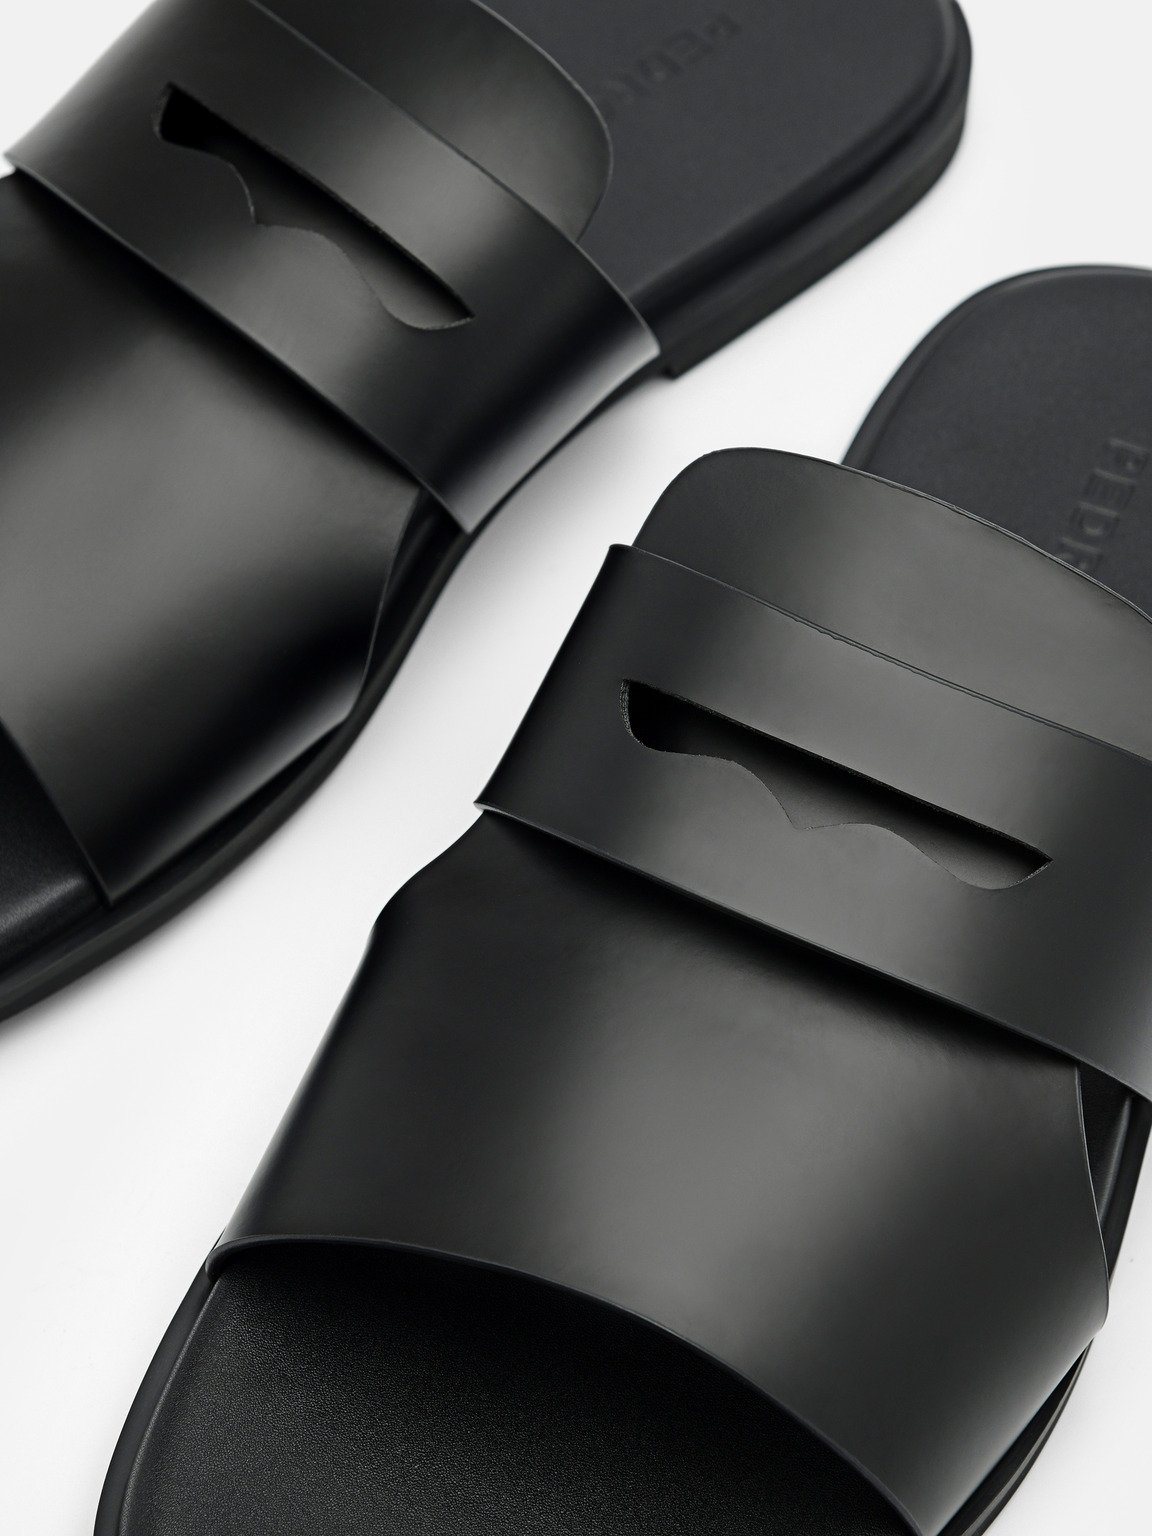 Penny Strap Slide Sandals, Black